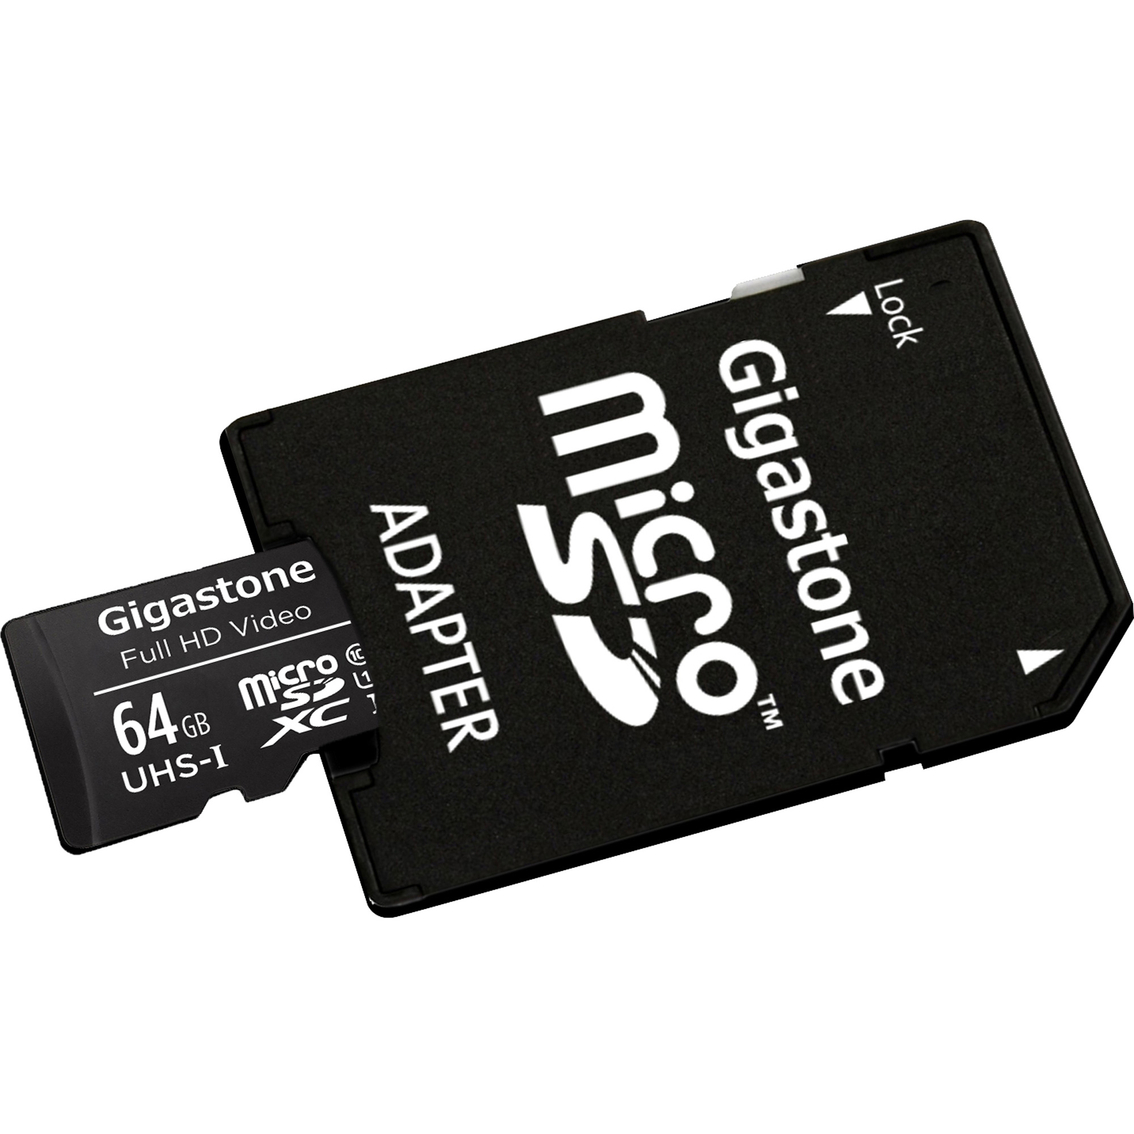 Gigastone 64GB Prime Series microSD Card 4-in-1 Kit - Image 4 of 6